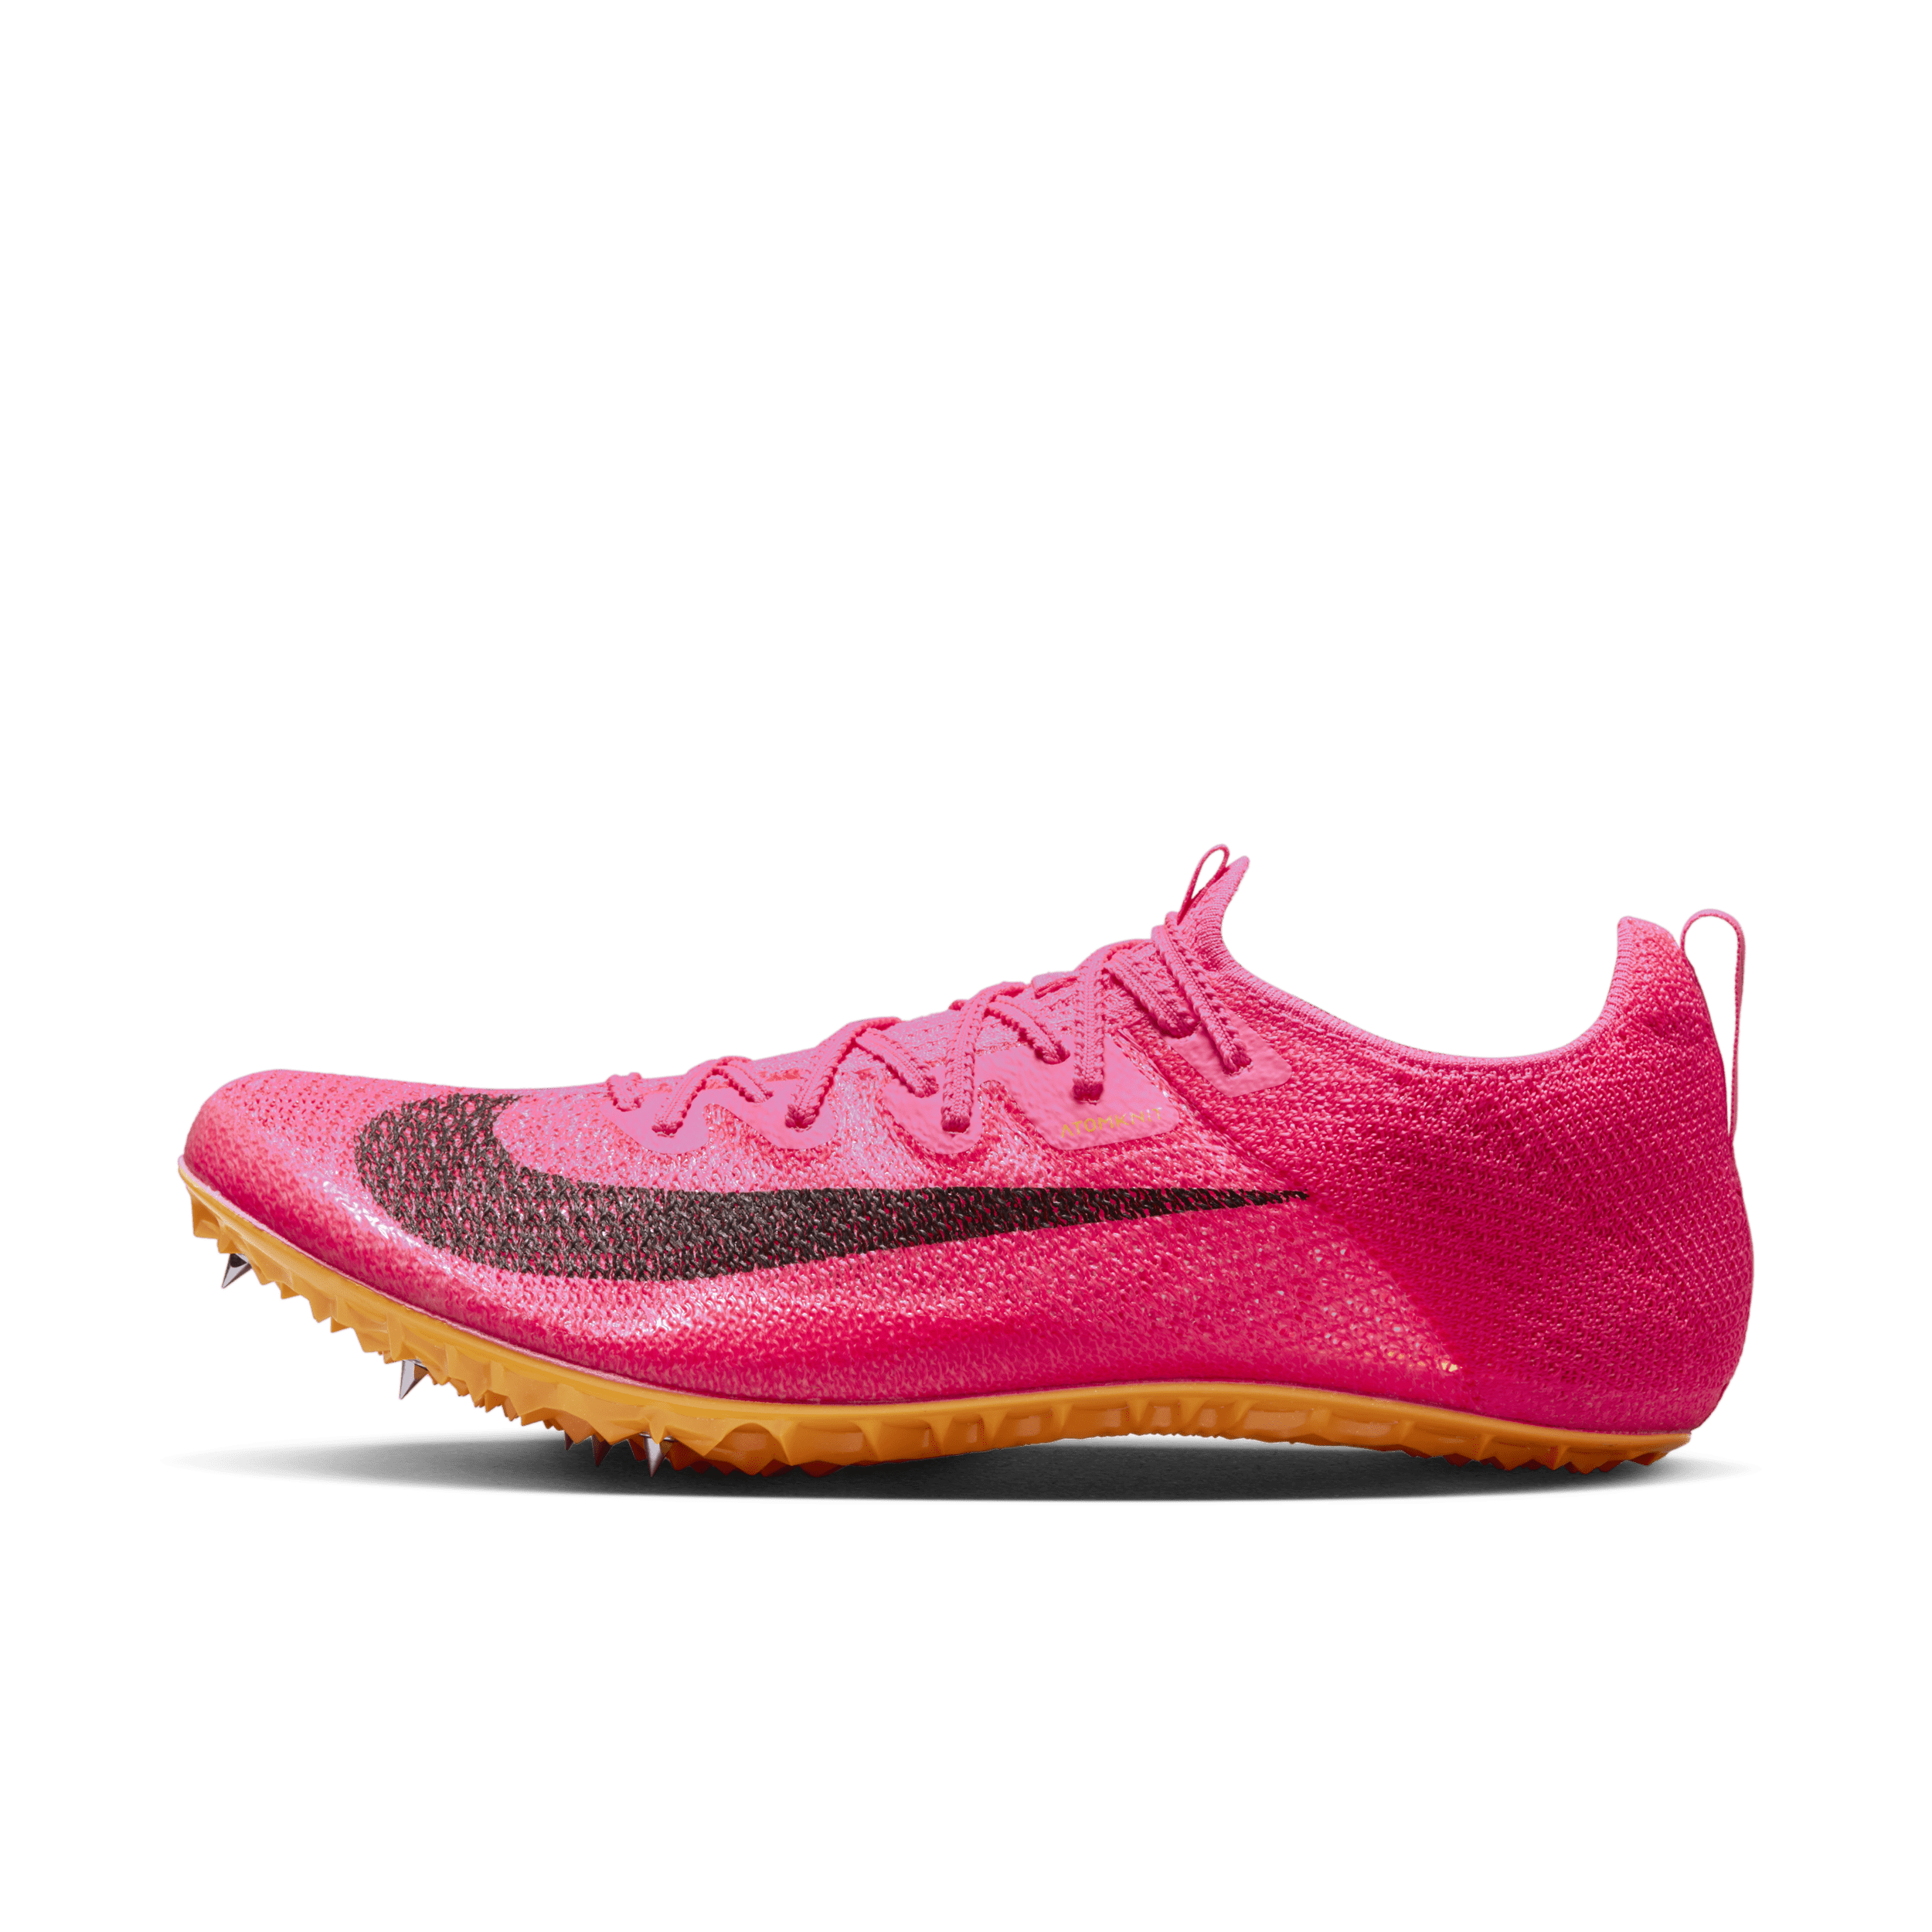 Nike Zoom Superfly Elite 2-pigsko til bane og sprint - Pink